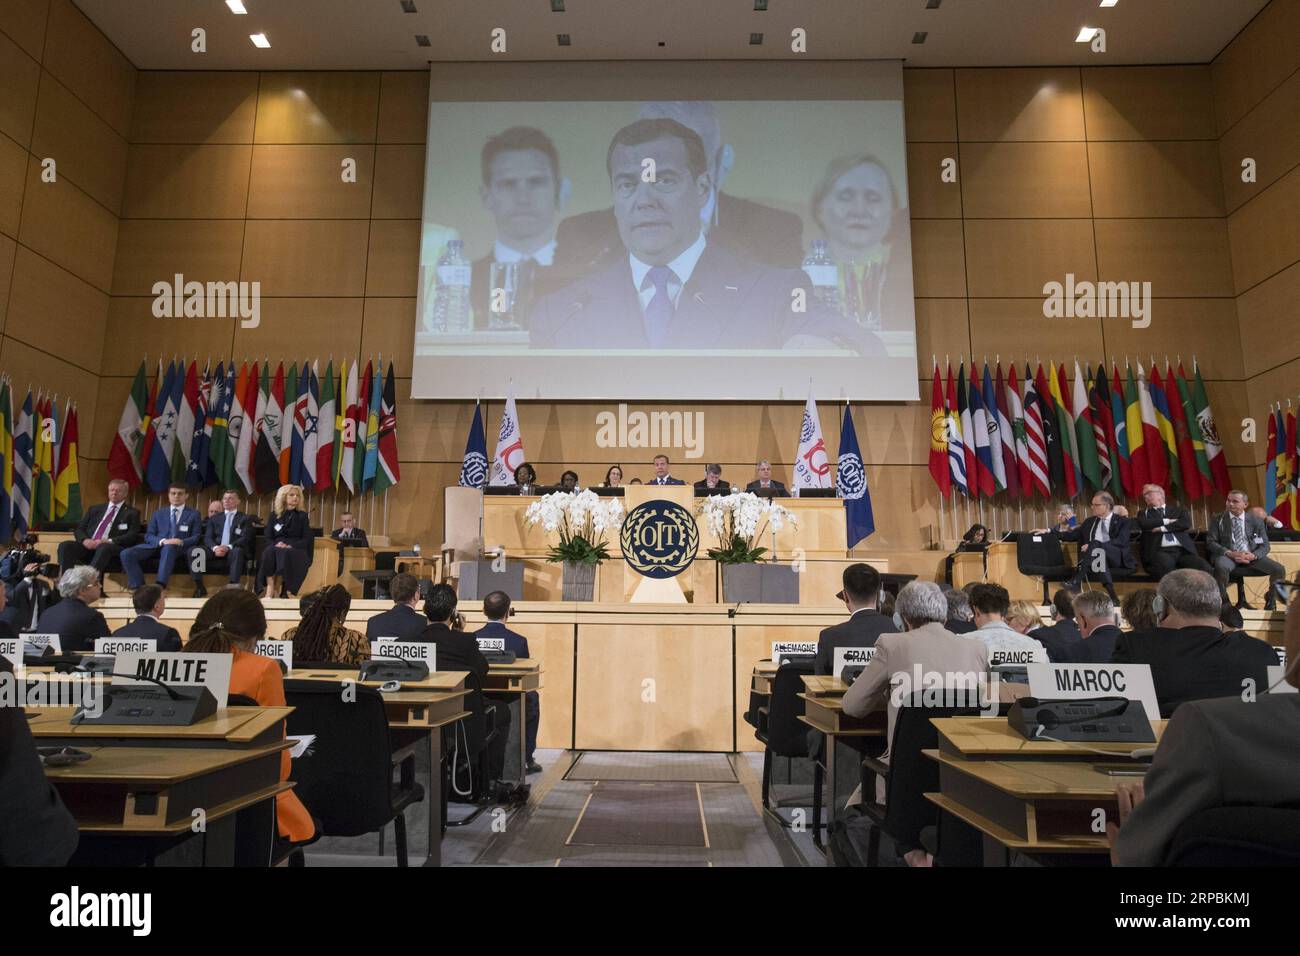 (190611) -- GENF, 11. Juni 2019 (Xinhua) -- der russische Premierminister Dmitri Medwedew hält eine Rede während der Internationalen Arbeitskonferenz der Internationalen Arbeitsorganisation (IAO) in Genf, Schweiz, 11. Juni 2019. Medwedew verurteilte am Dienstag illegitime Sanktionen, Protektionismus und Handelskriege, während er sich an die jährliche Internationale Arbeitskonferenz der IAO wandte, die vom 10. Bis 21. Juni stattfindet und den 100. Jahrestag der Organisation in Genf feiert. (Xinhua/Xu Jinquan) SCHWEIZ-GENF-ILO-HUNDERTJAHRSTAGUNG-MEDWEDEV PUBLICATIONxNOTxINxCHN Stockfoto